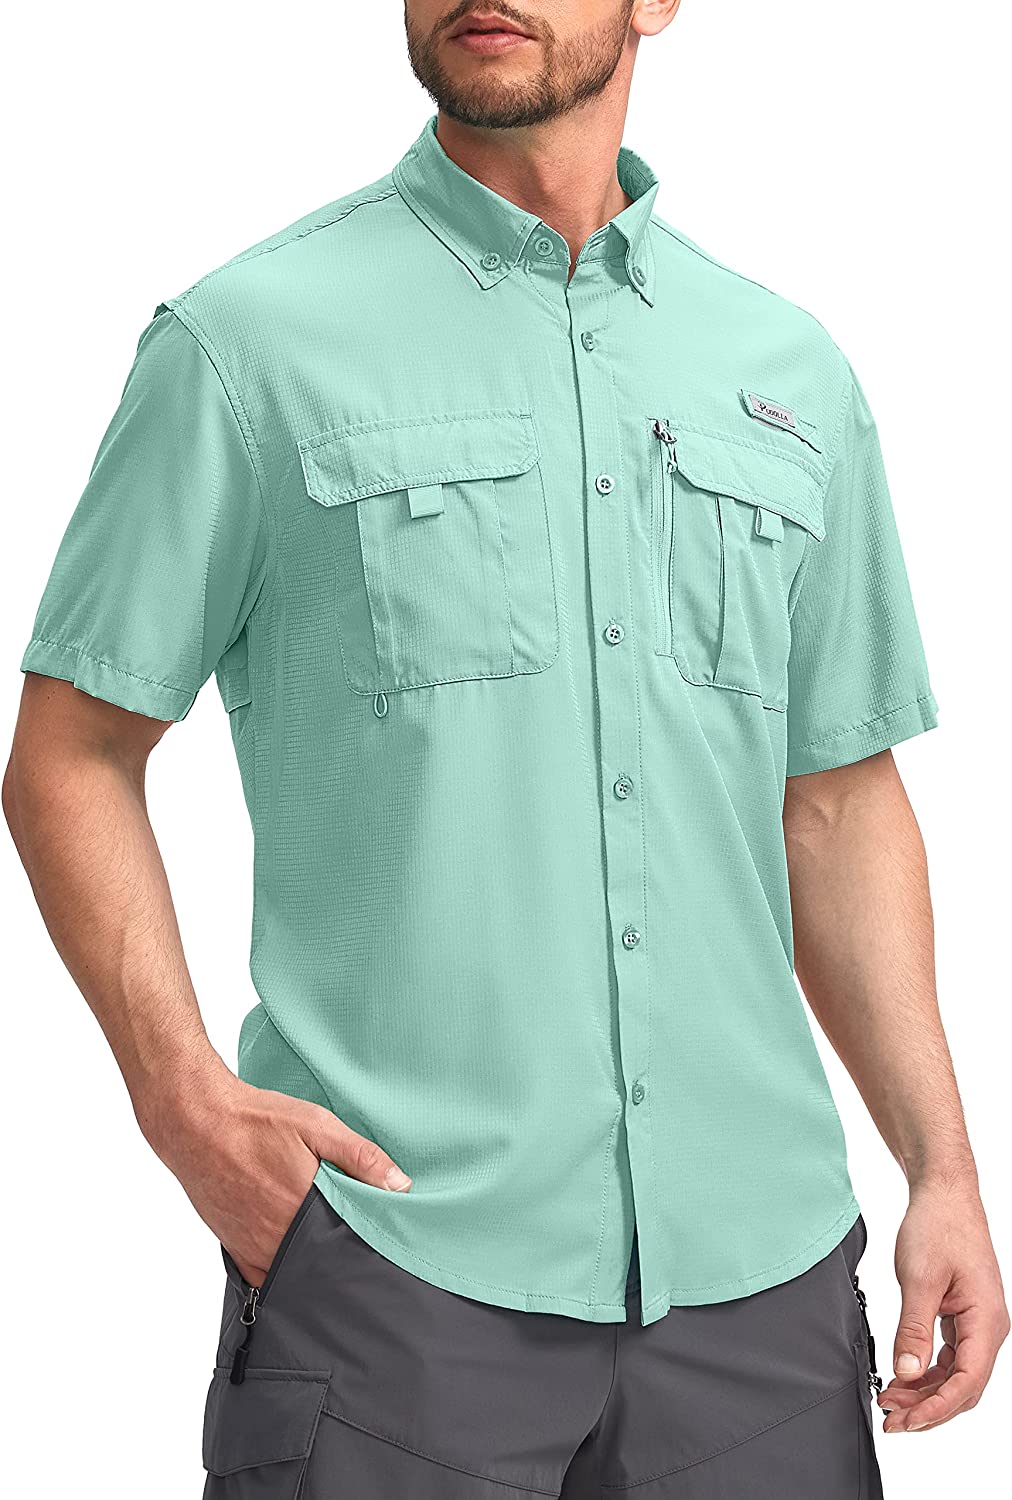 Camisas de pesca Pudolla para hombre mangas cortas camisas de trabajo de  viaje verano con botones